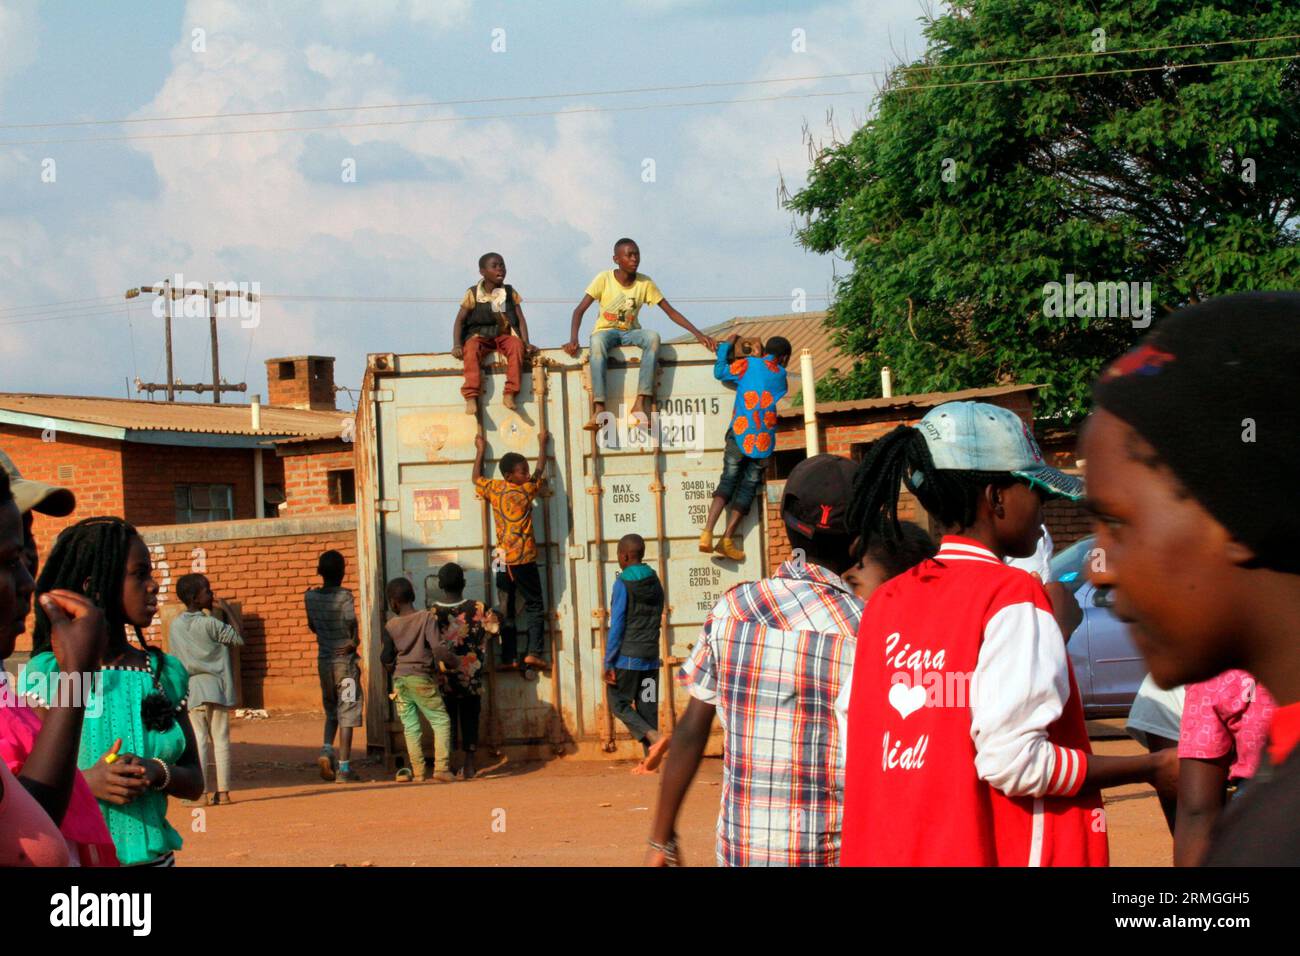 Junge Menschen sitzen auf einem Container, während andere versuchen, die Aktivitäten während eines Festivals im Dzaleka Refugee Camp im Bezirk Dowa in Malawi zu sehen. Stockfoto